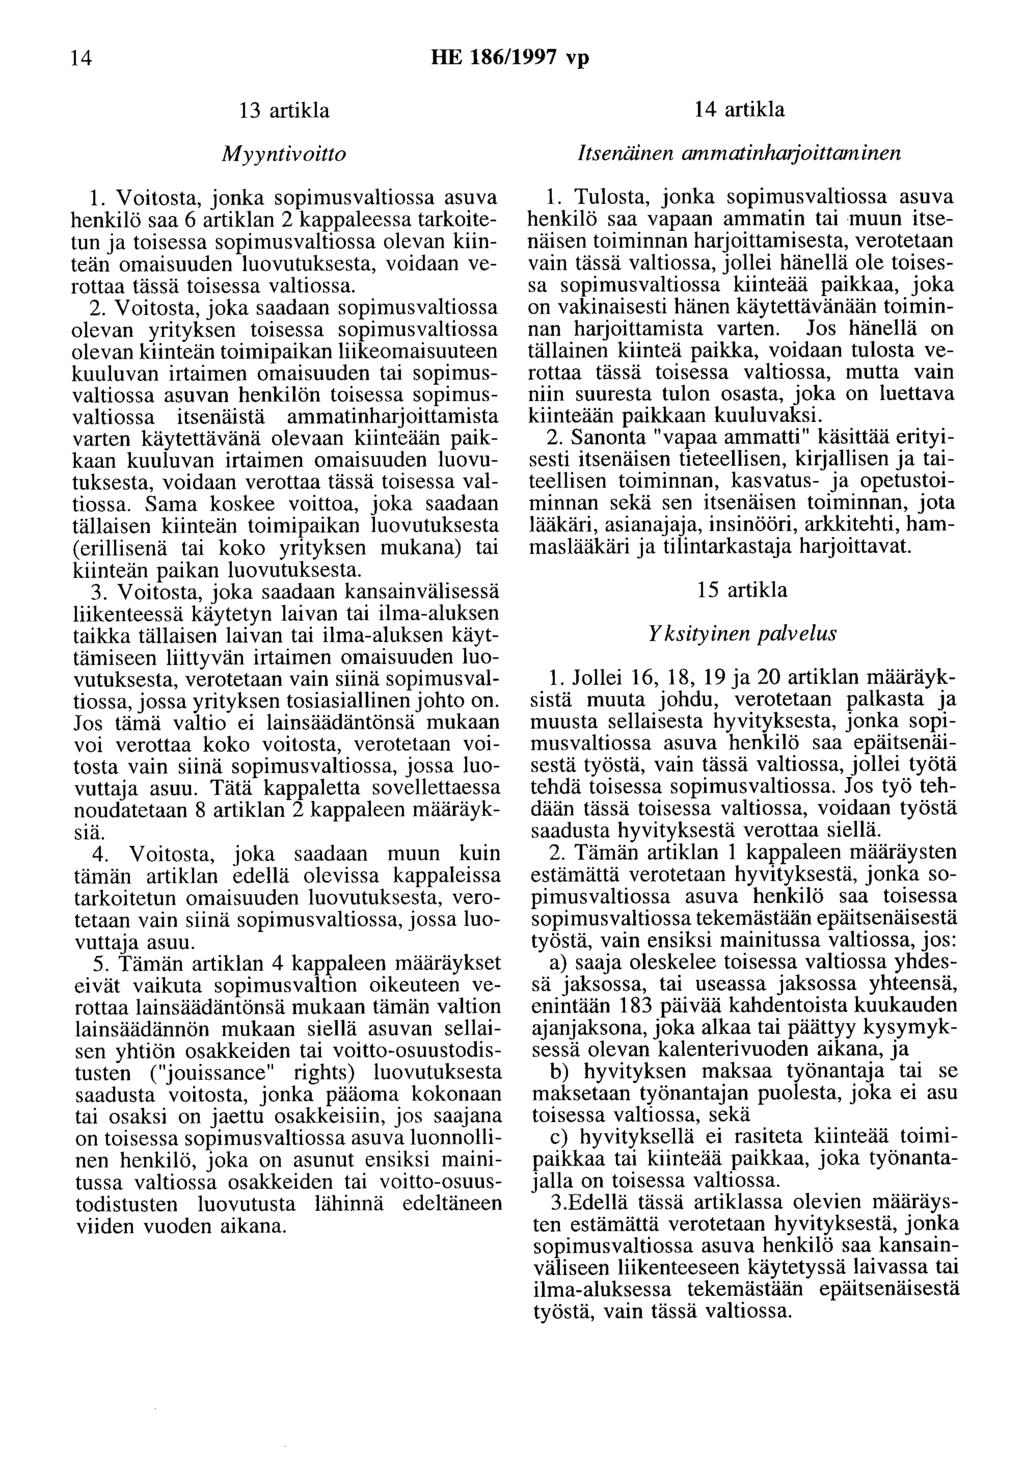 14 HE 186/1997 vp 13 artikla Myyntivoitto 1.